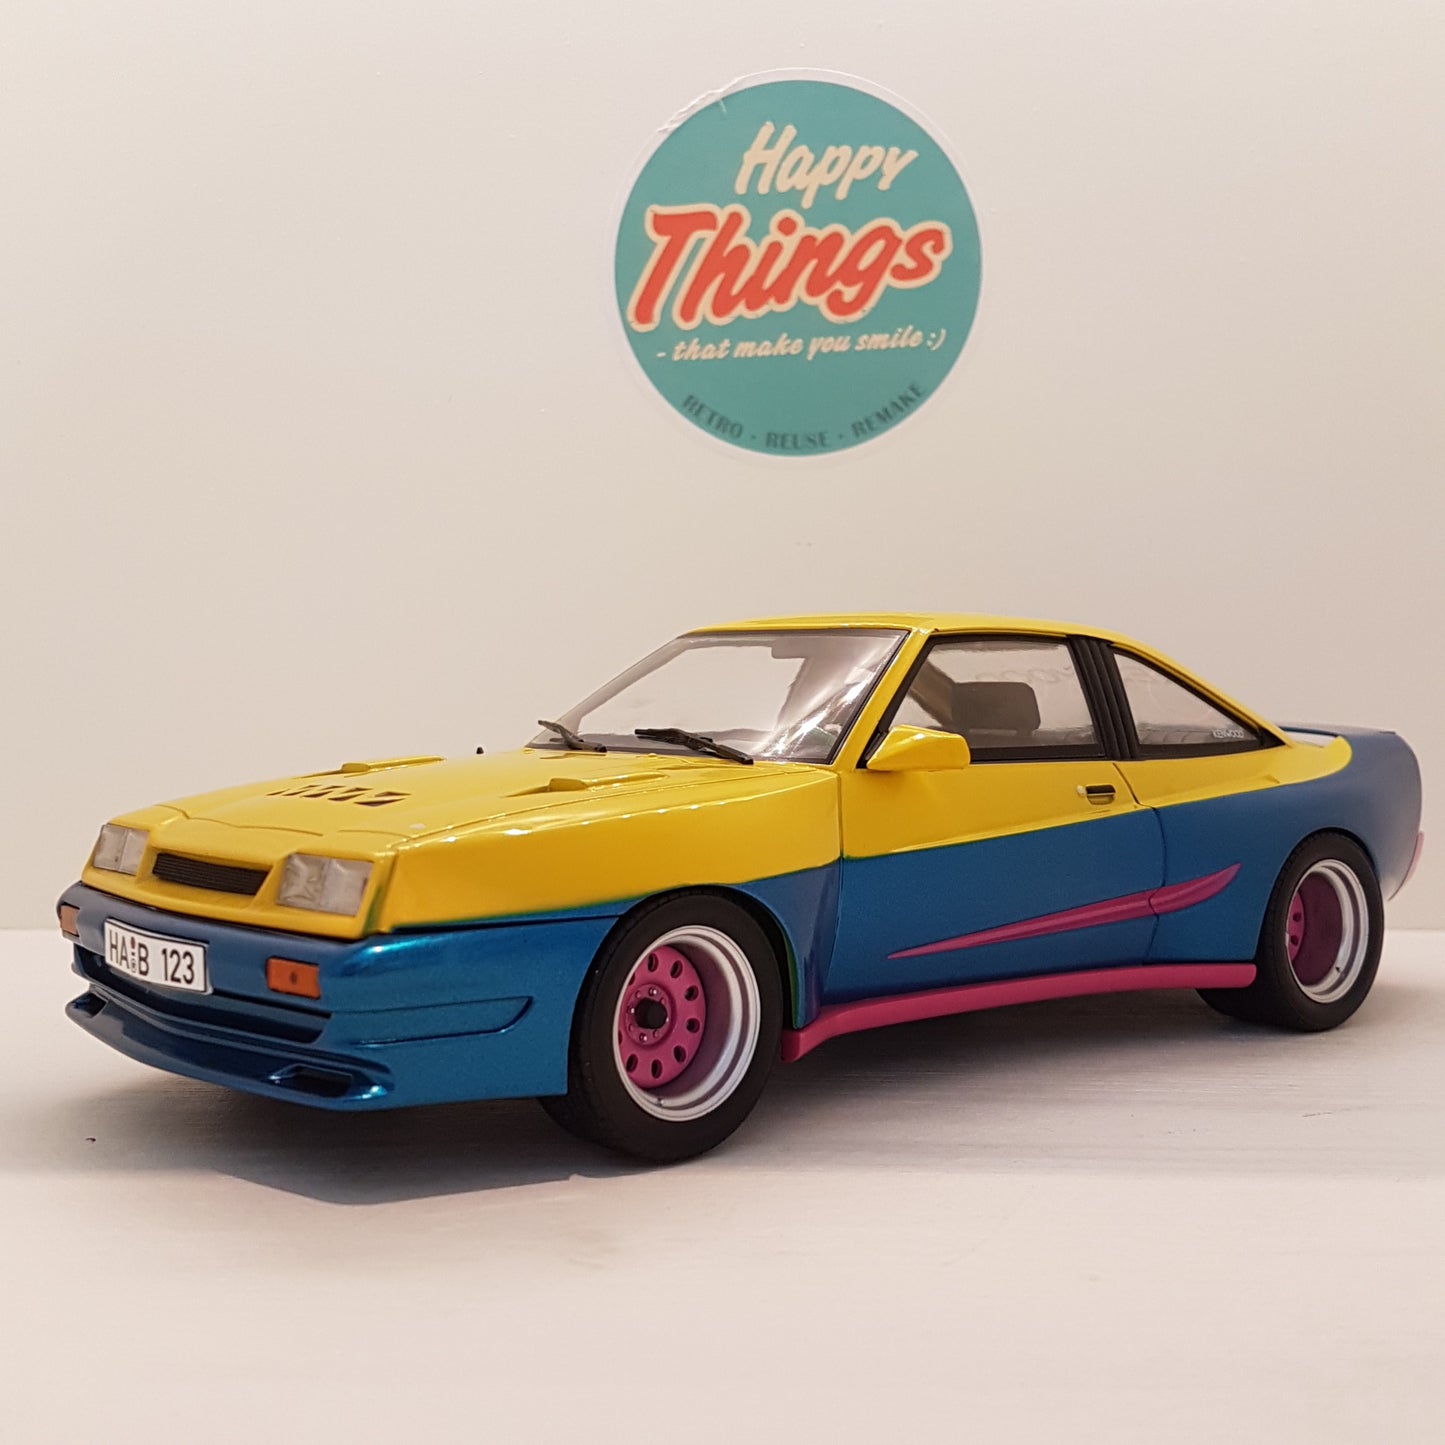 1:18 Opel Manta B Mattig, MCG, 1991, gul/blå, lukket model